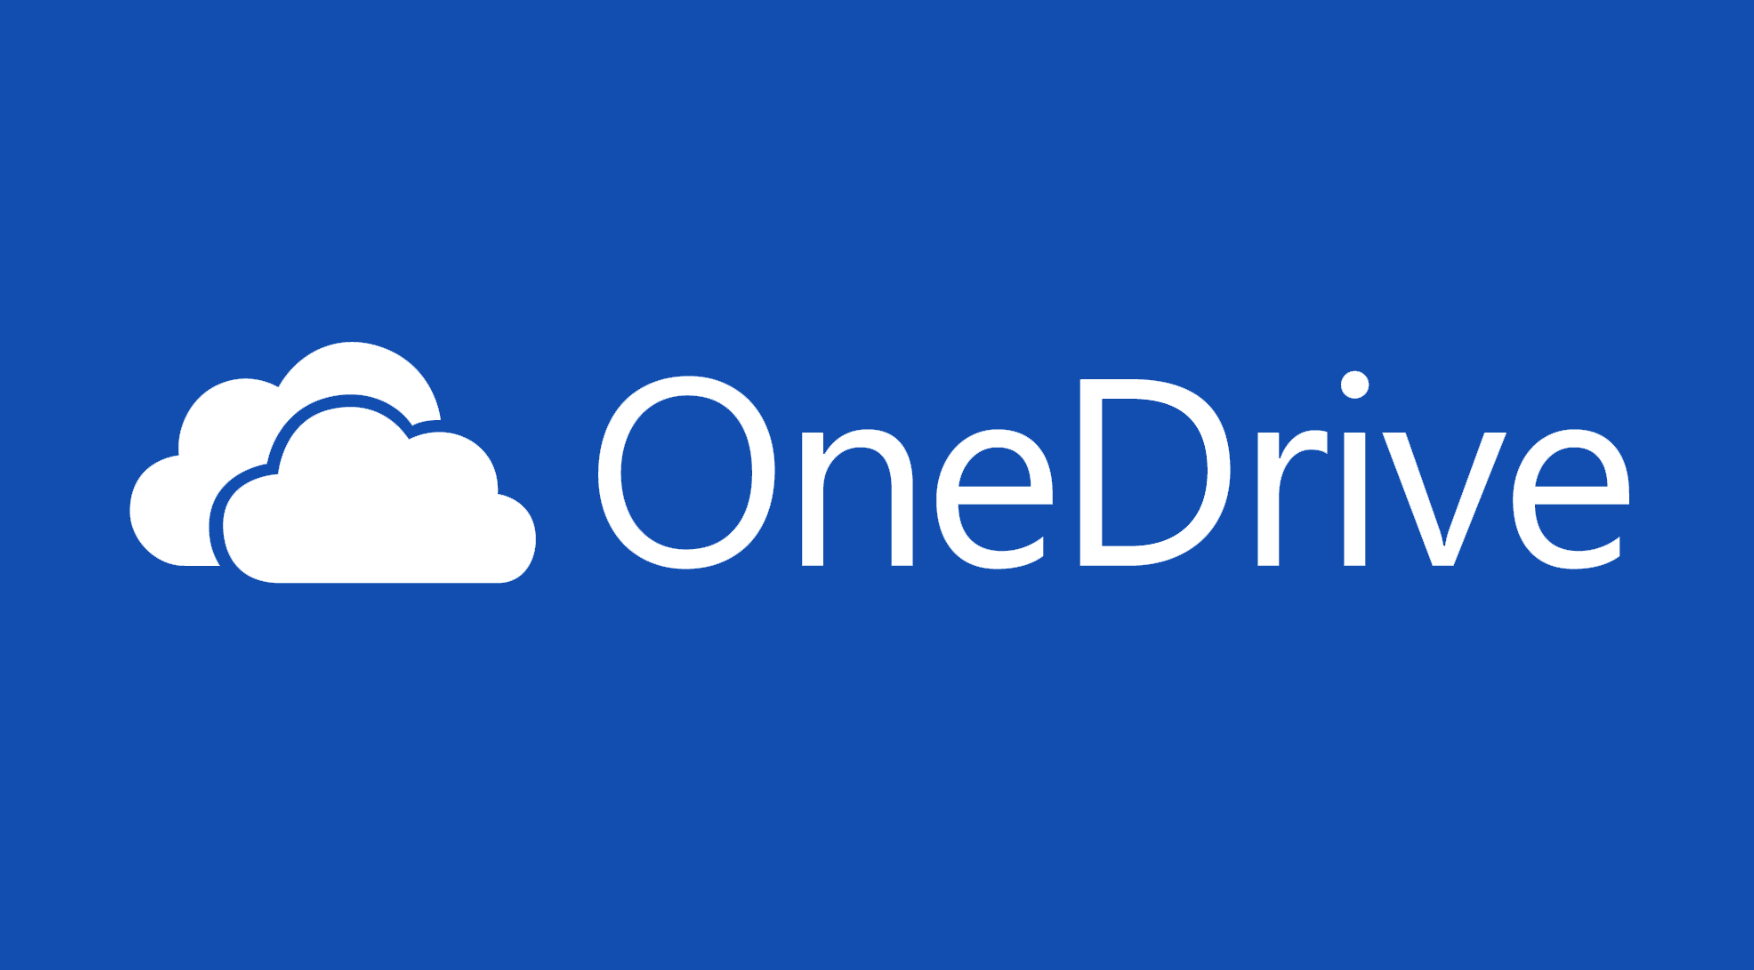 تطبيق التخزين السحابى OneDrive يصل لـ 1 مليار تحميل